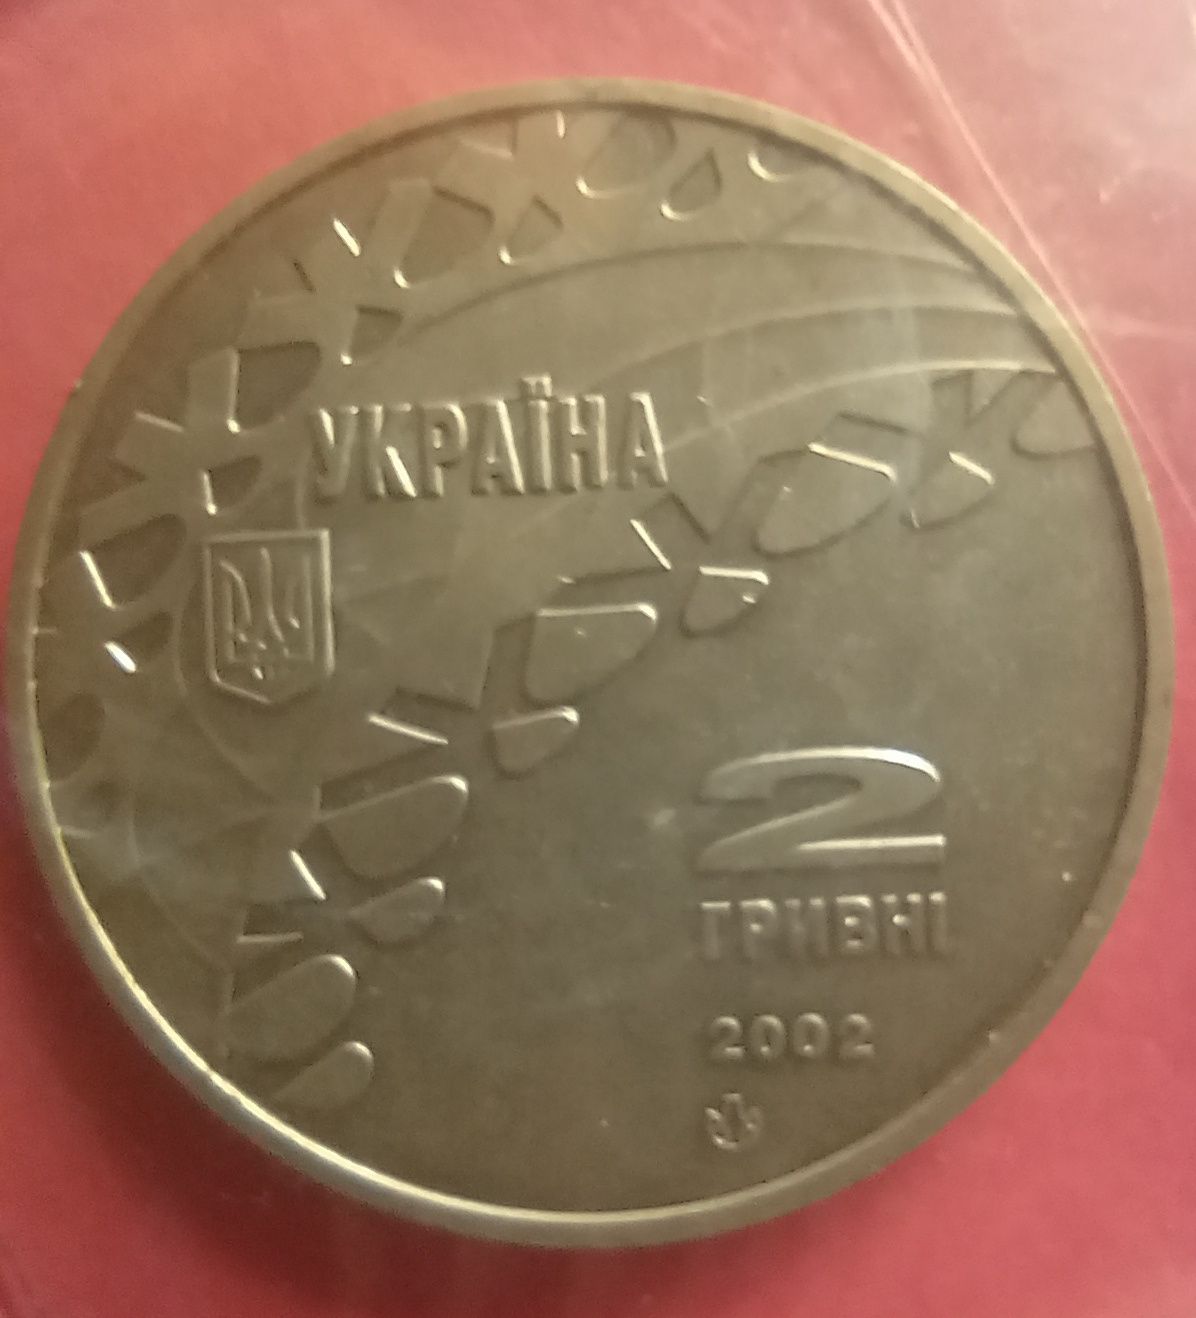 Україна 2 гривні 2002, Ковзанярський спорт. XIX зимові Олімпійські ігр